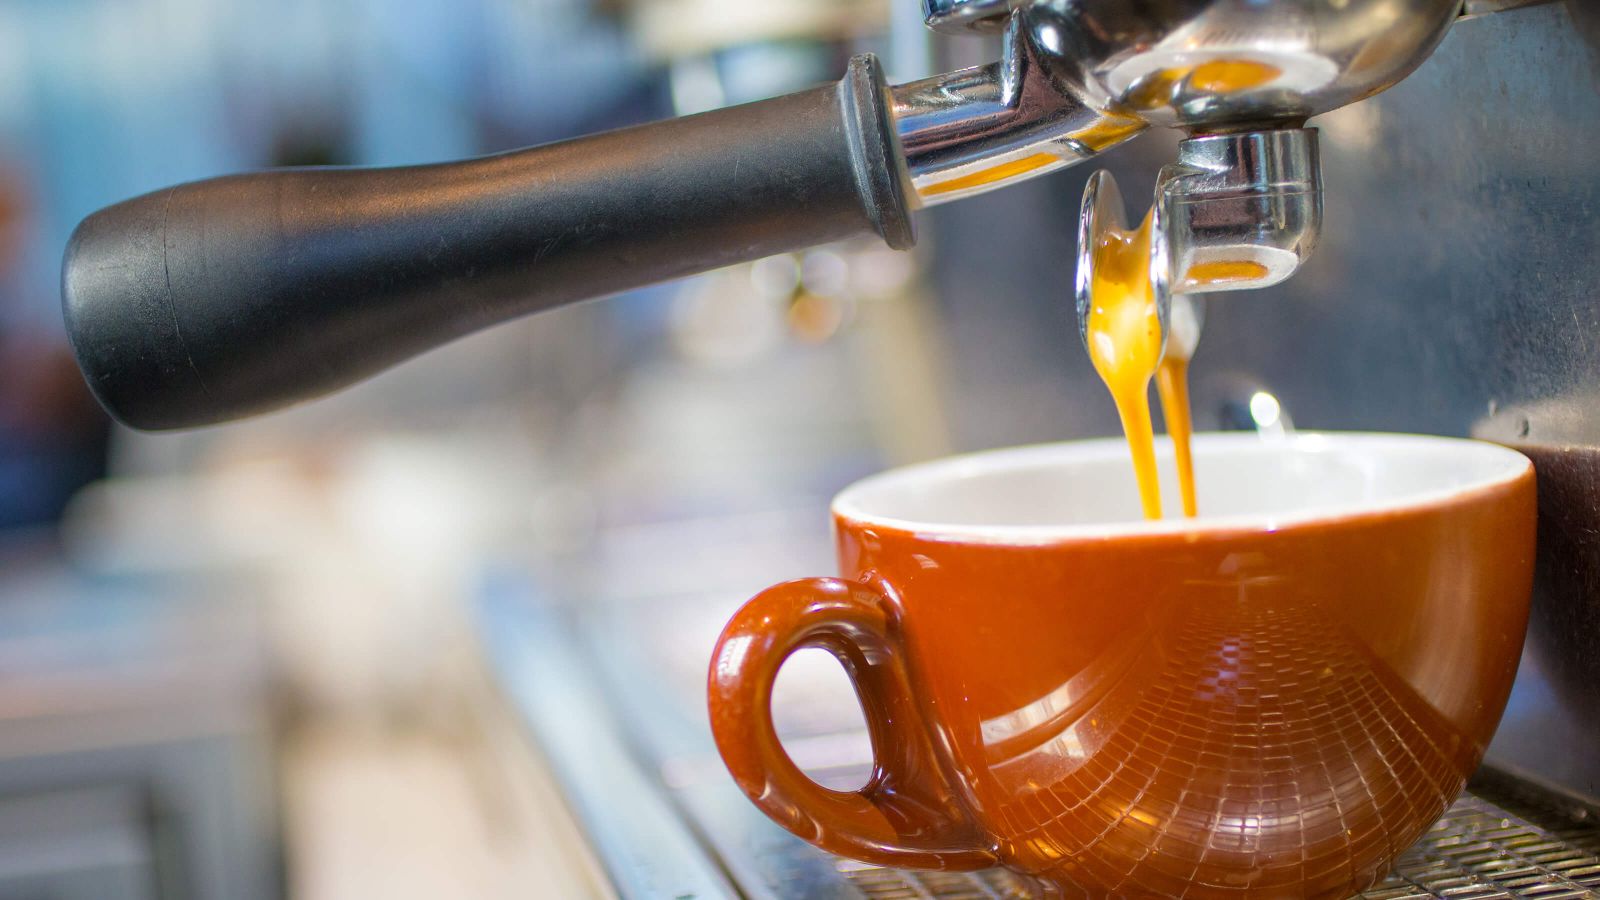 Espresso beginning to stream from a portafilter’s snout into a red ceramic mug.